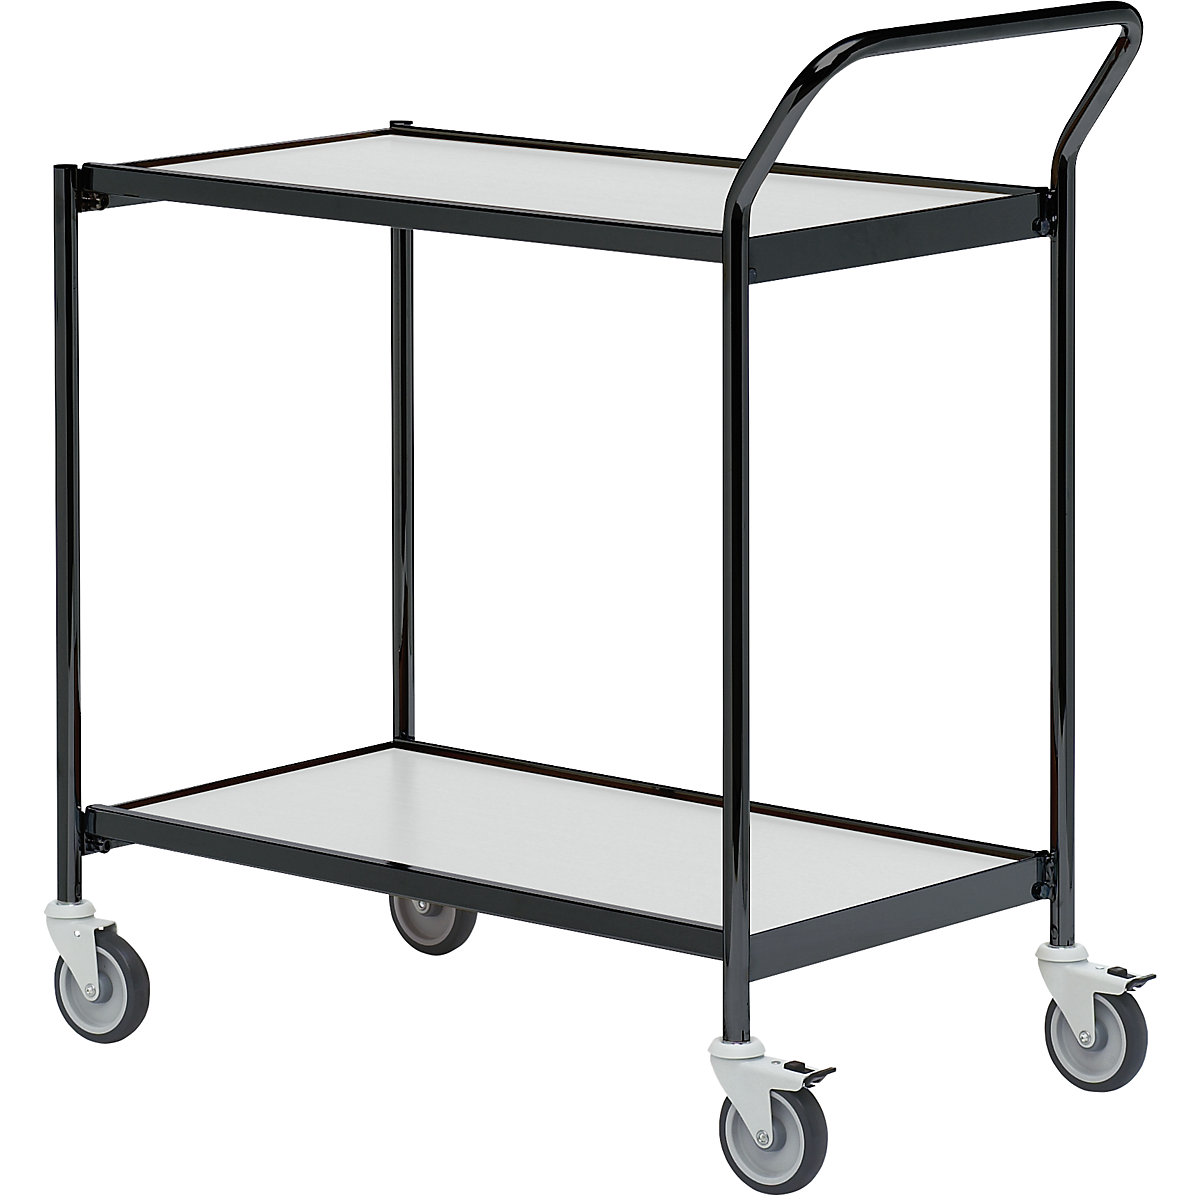 Stolový vozík – HelgeNyberg, 2 etáže, d x š 800 x 420 mm, černá / šedá, od 5 ks-30